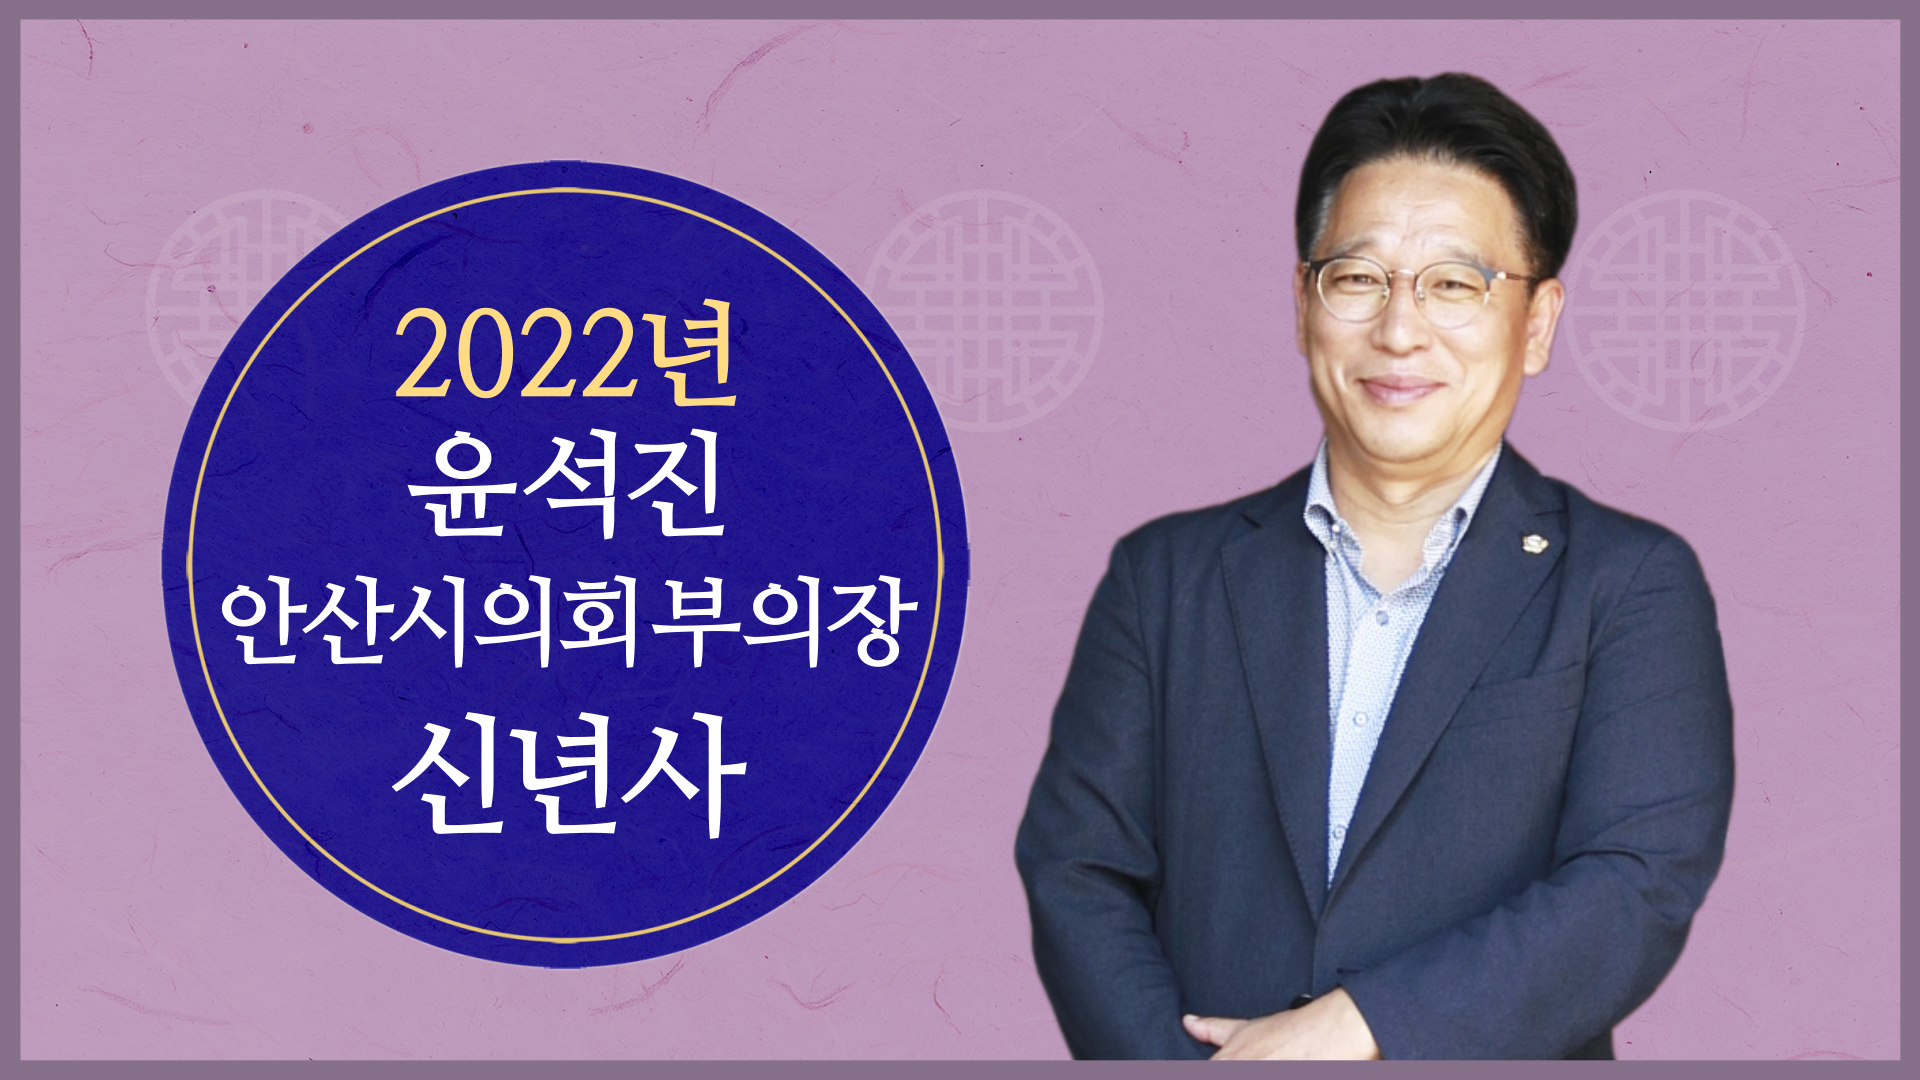 윤석진 안산시의회 부의장 2022년 신년사 사진